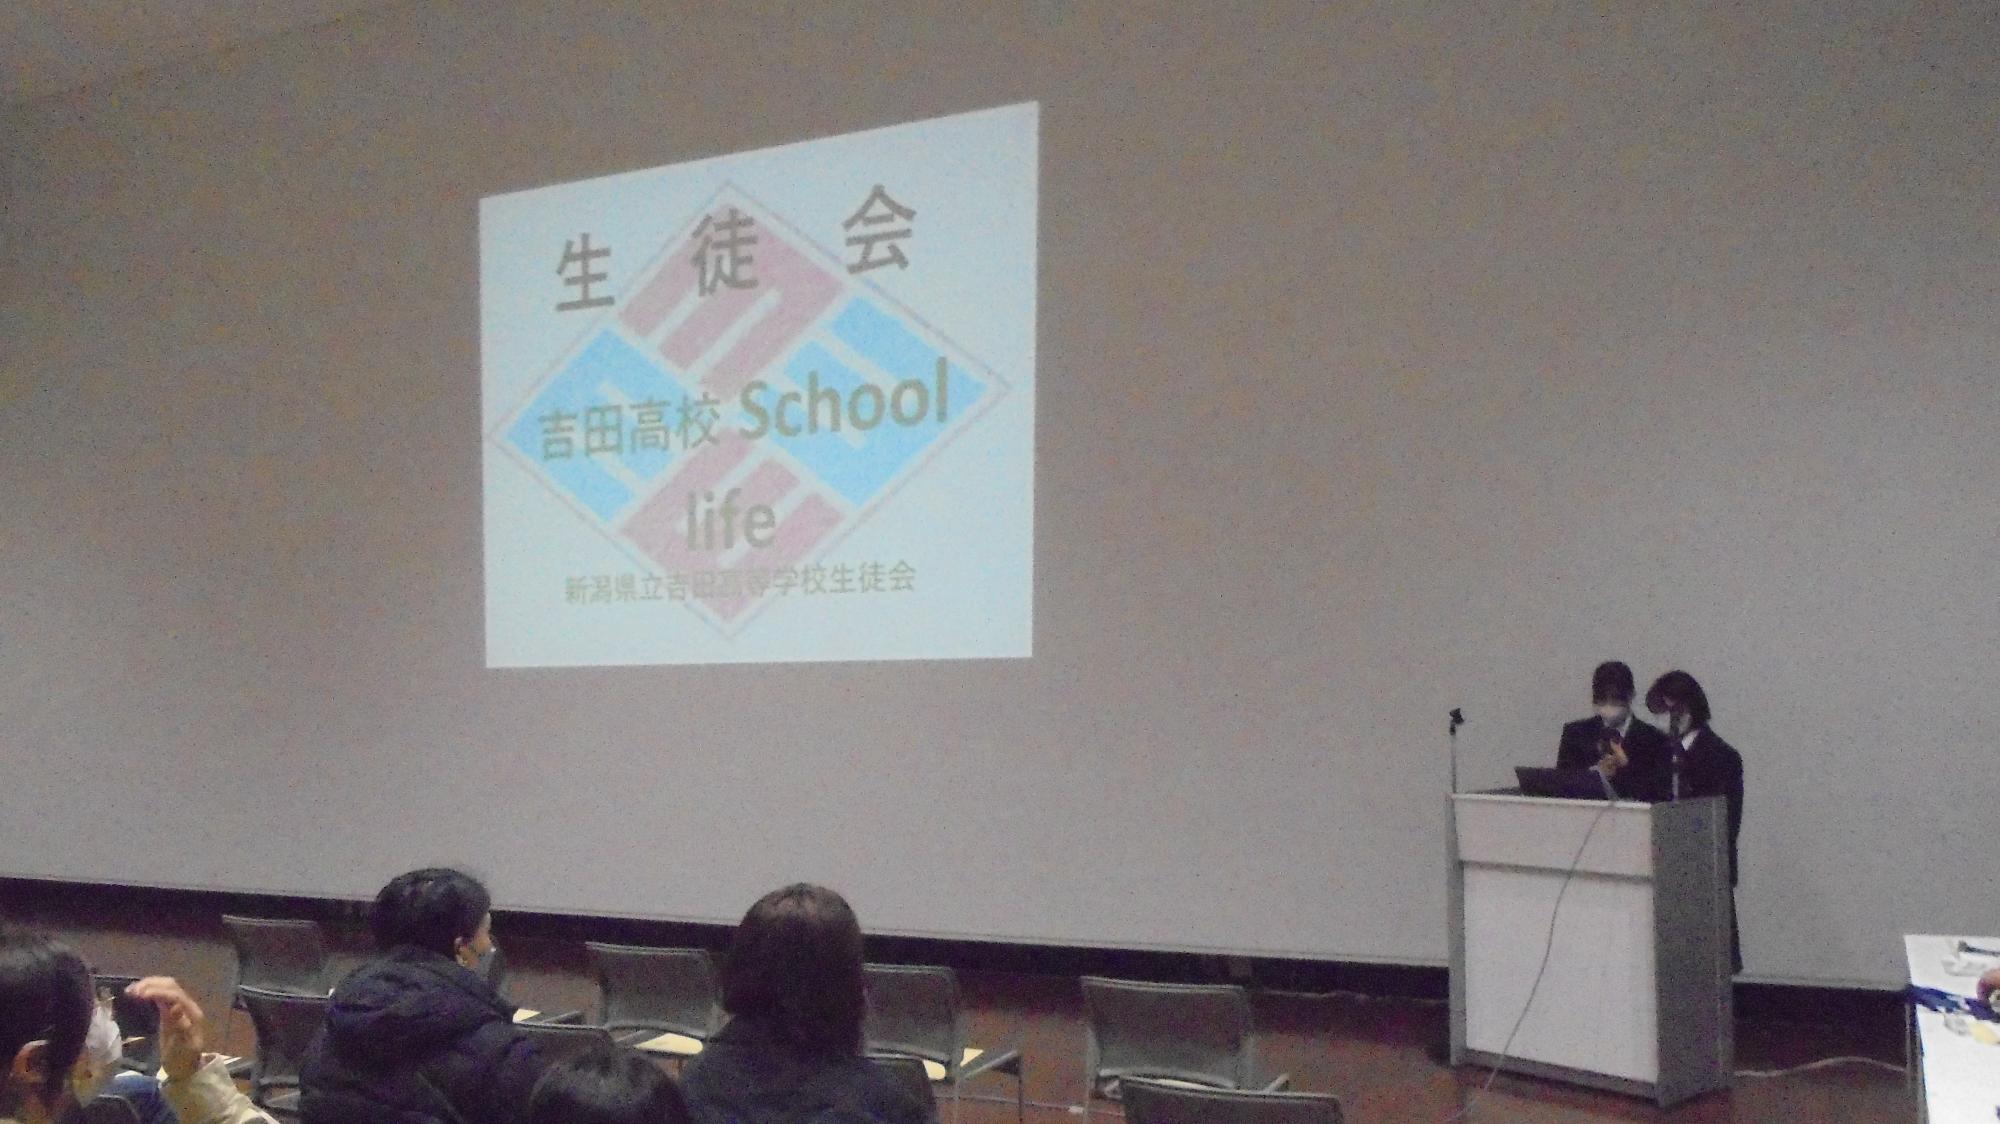 吉田高校生が学校紹介の説明をしているところ